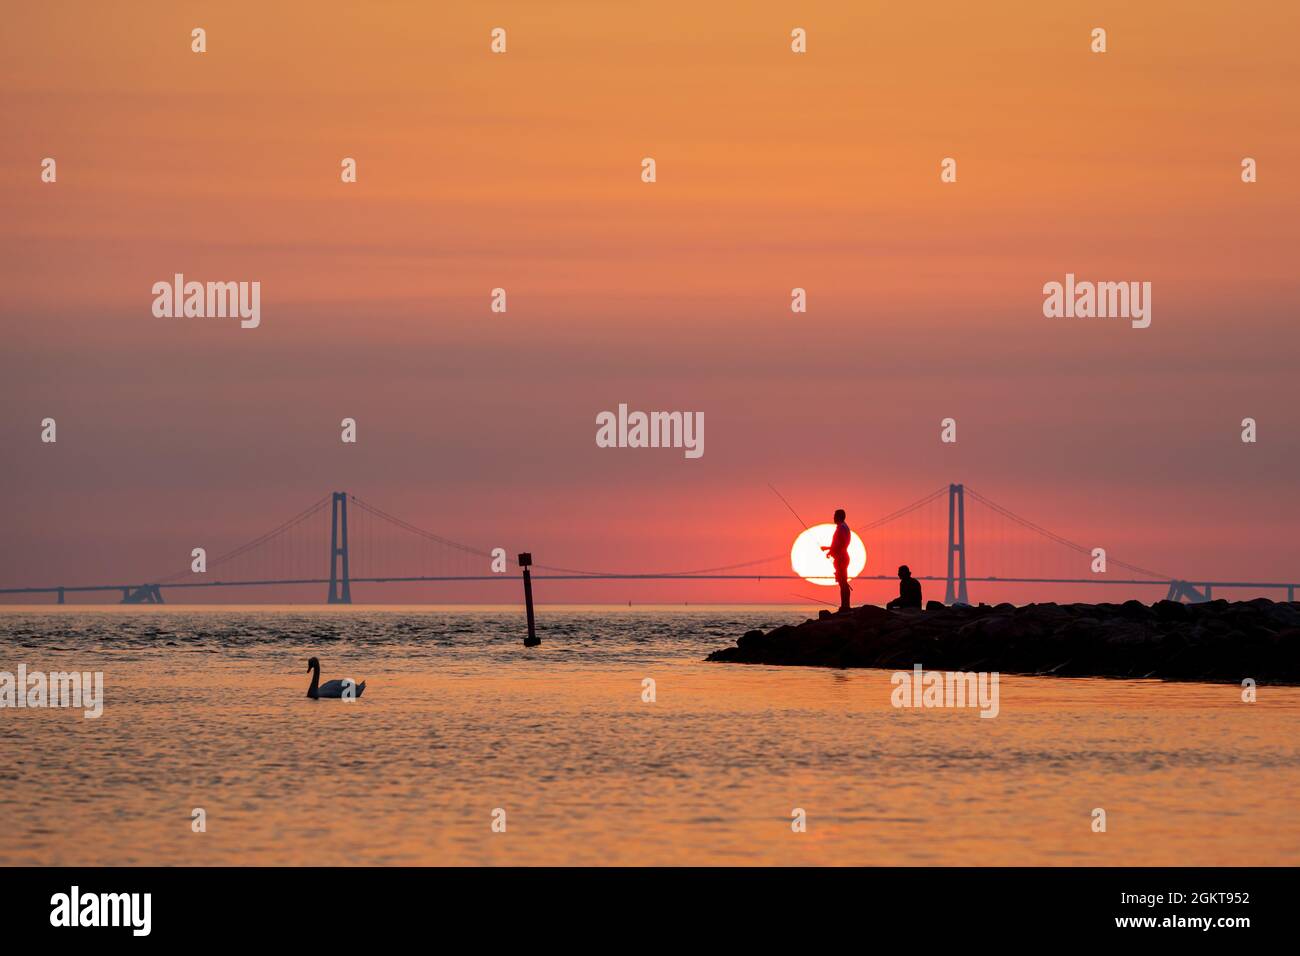 Silueta de dos hombres pescando con el puente Great Belt Bridge en el fondo, Dinamarca Foto de stock